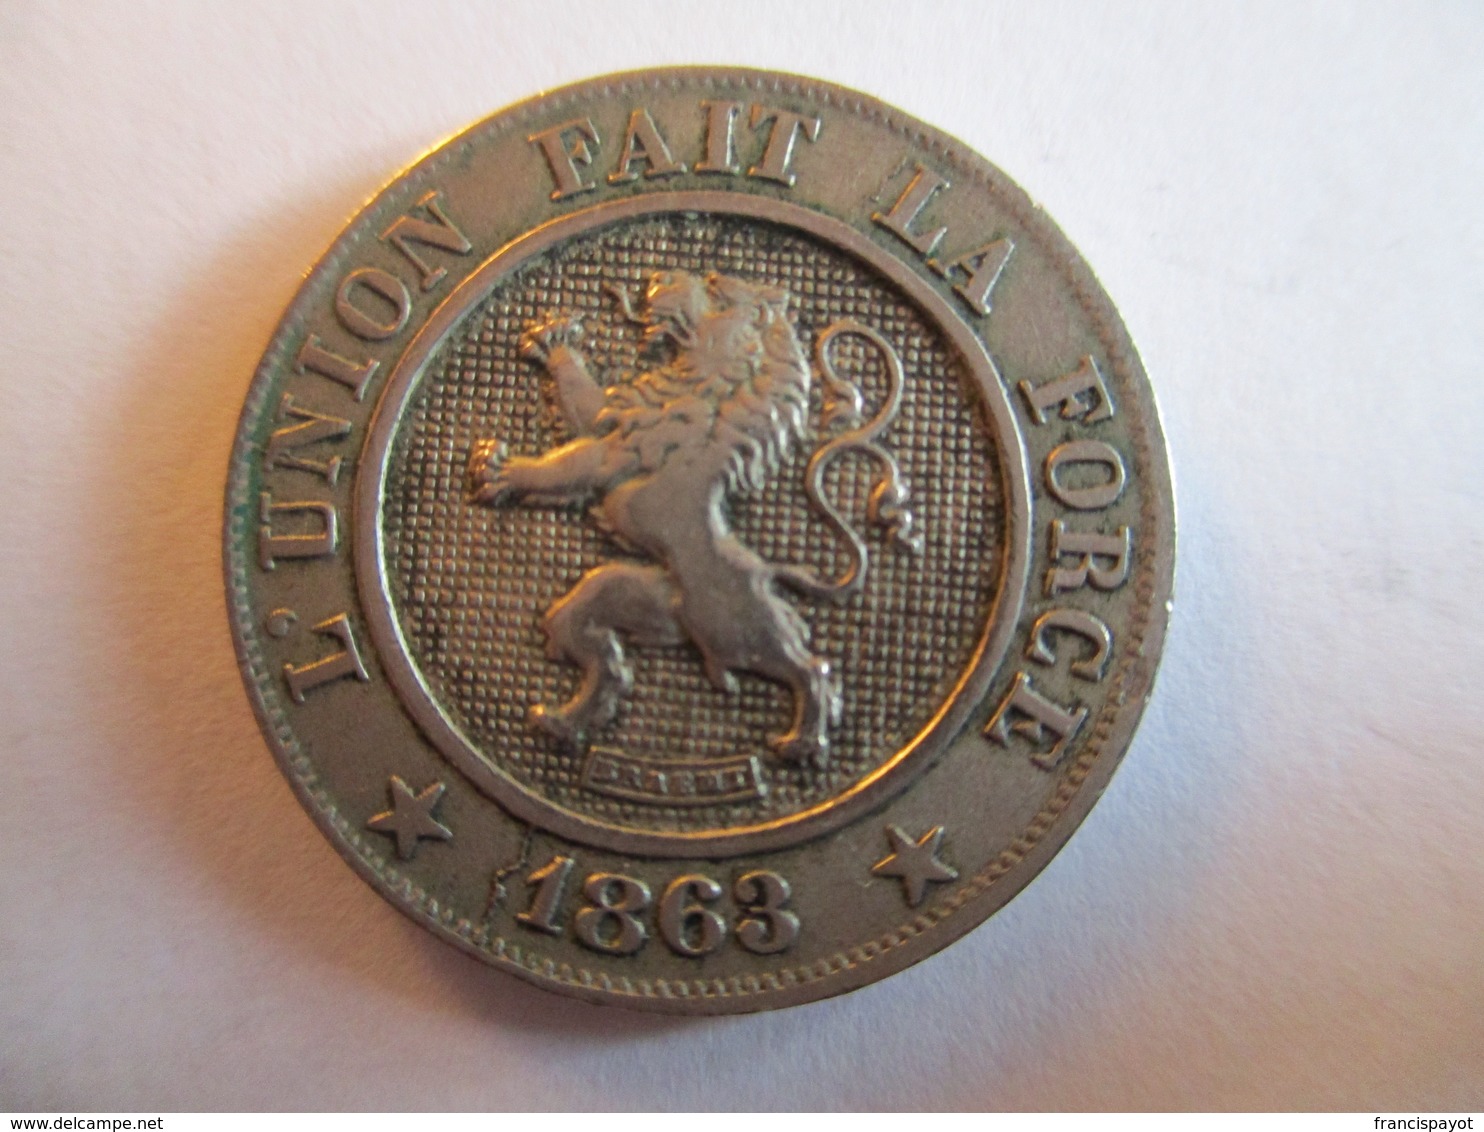 Belgique: 10 Centimes 1863 - 10 Cent